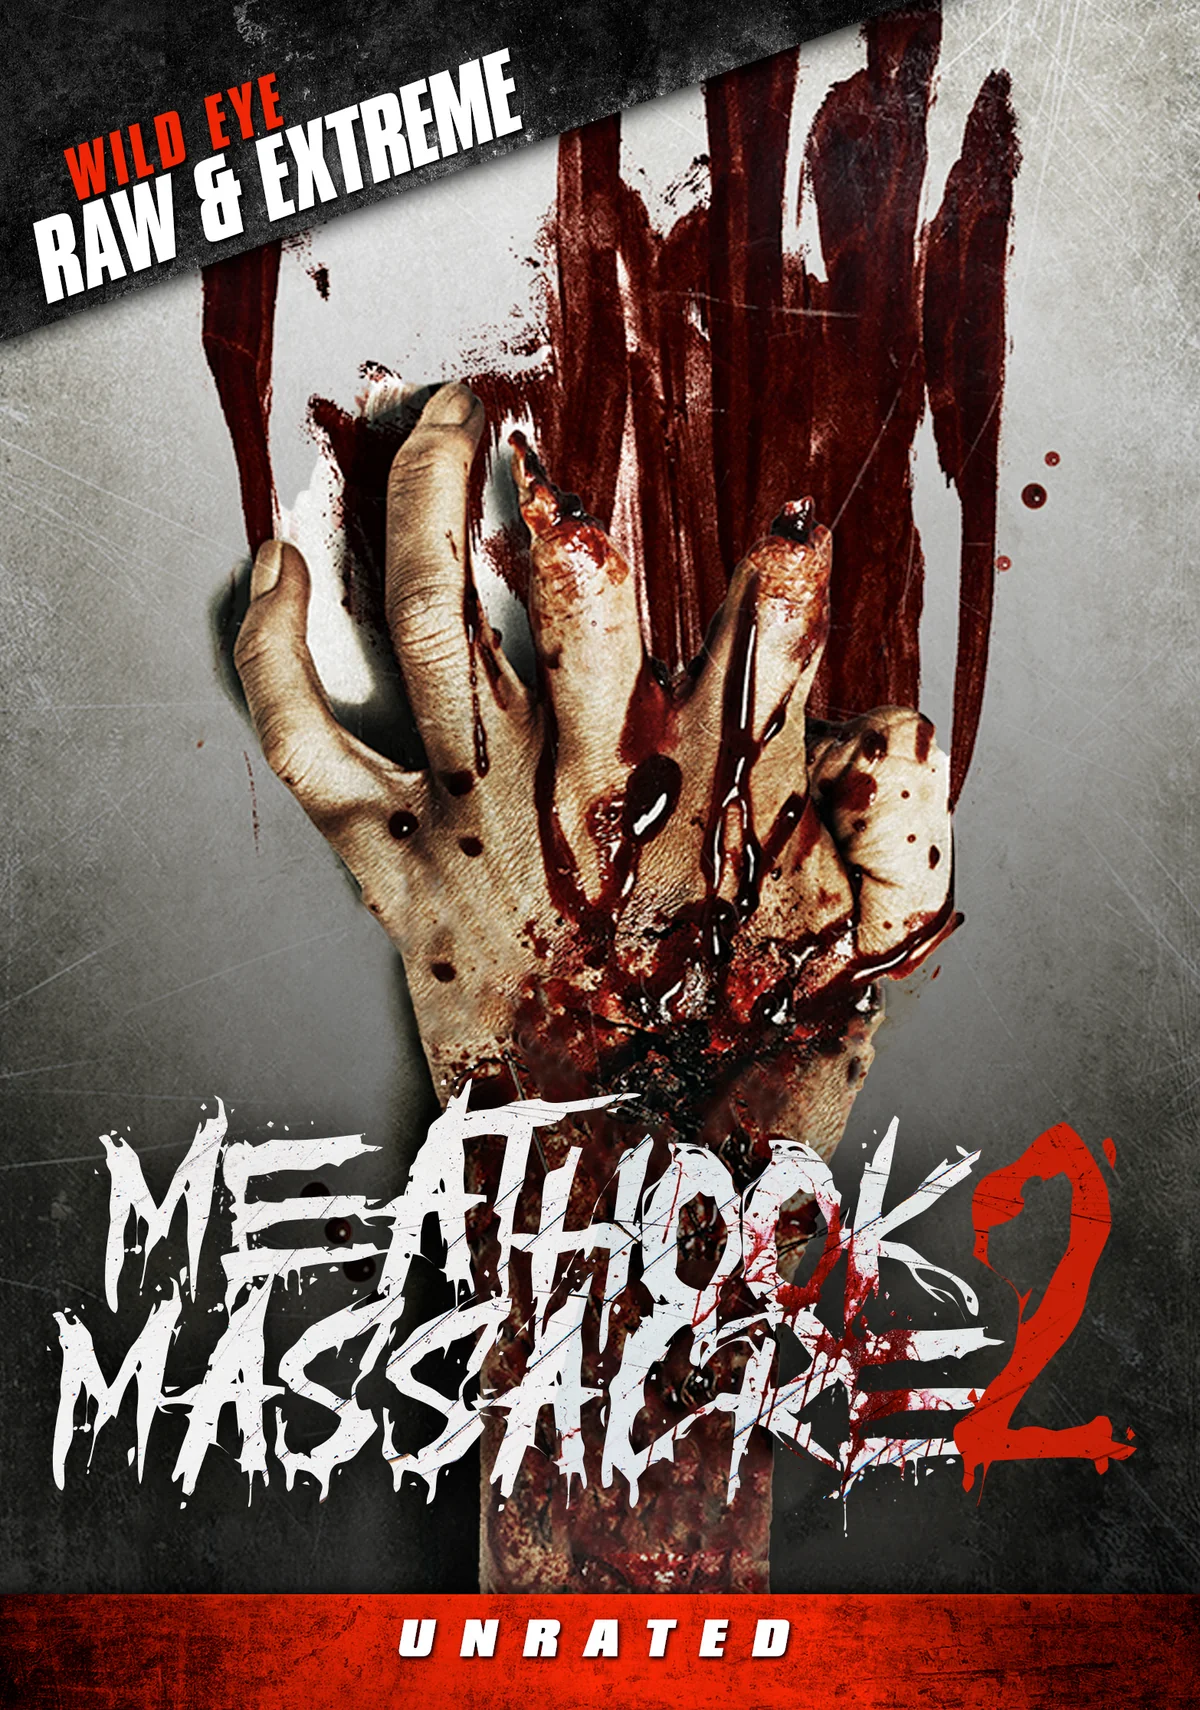 Meathook Massacre 5: The Final Chapter Blu-ray